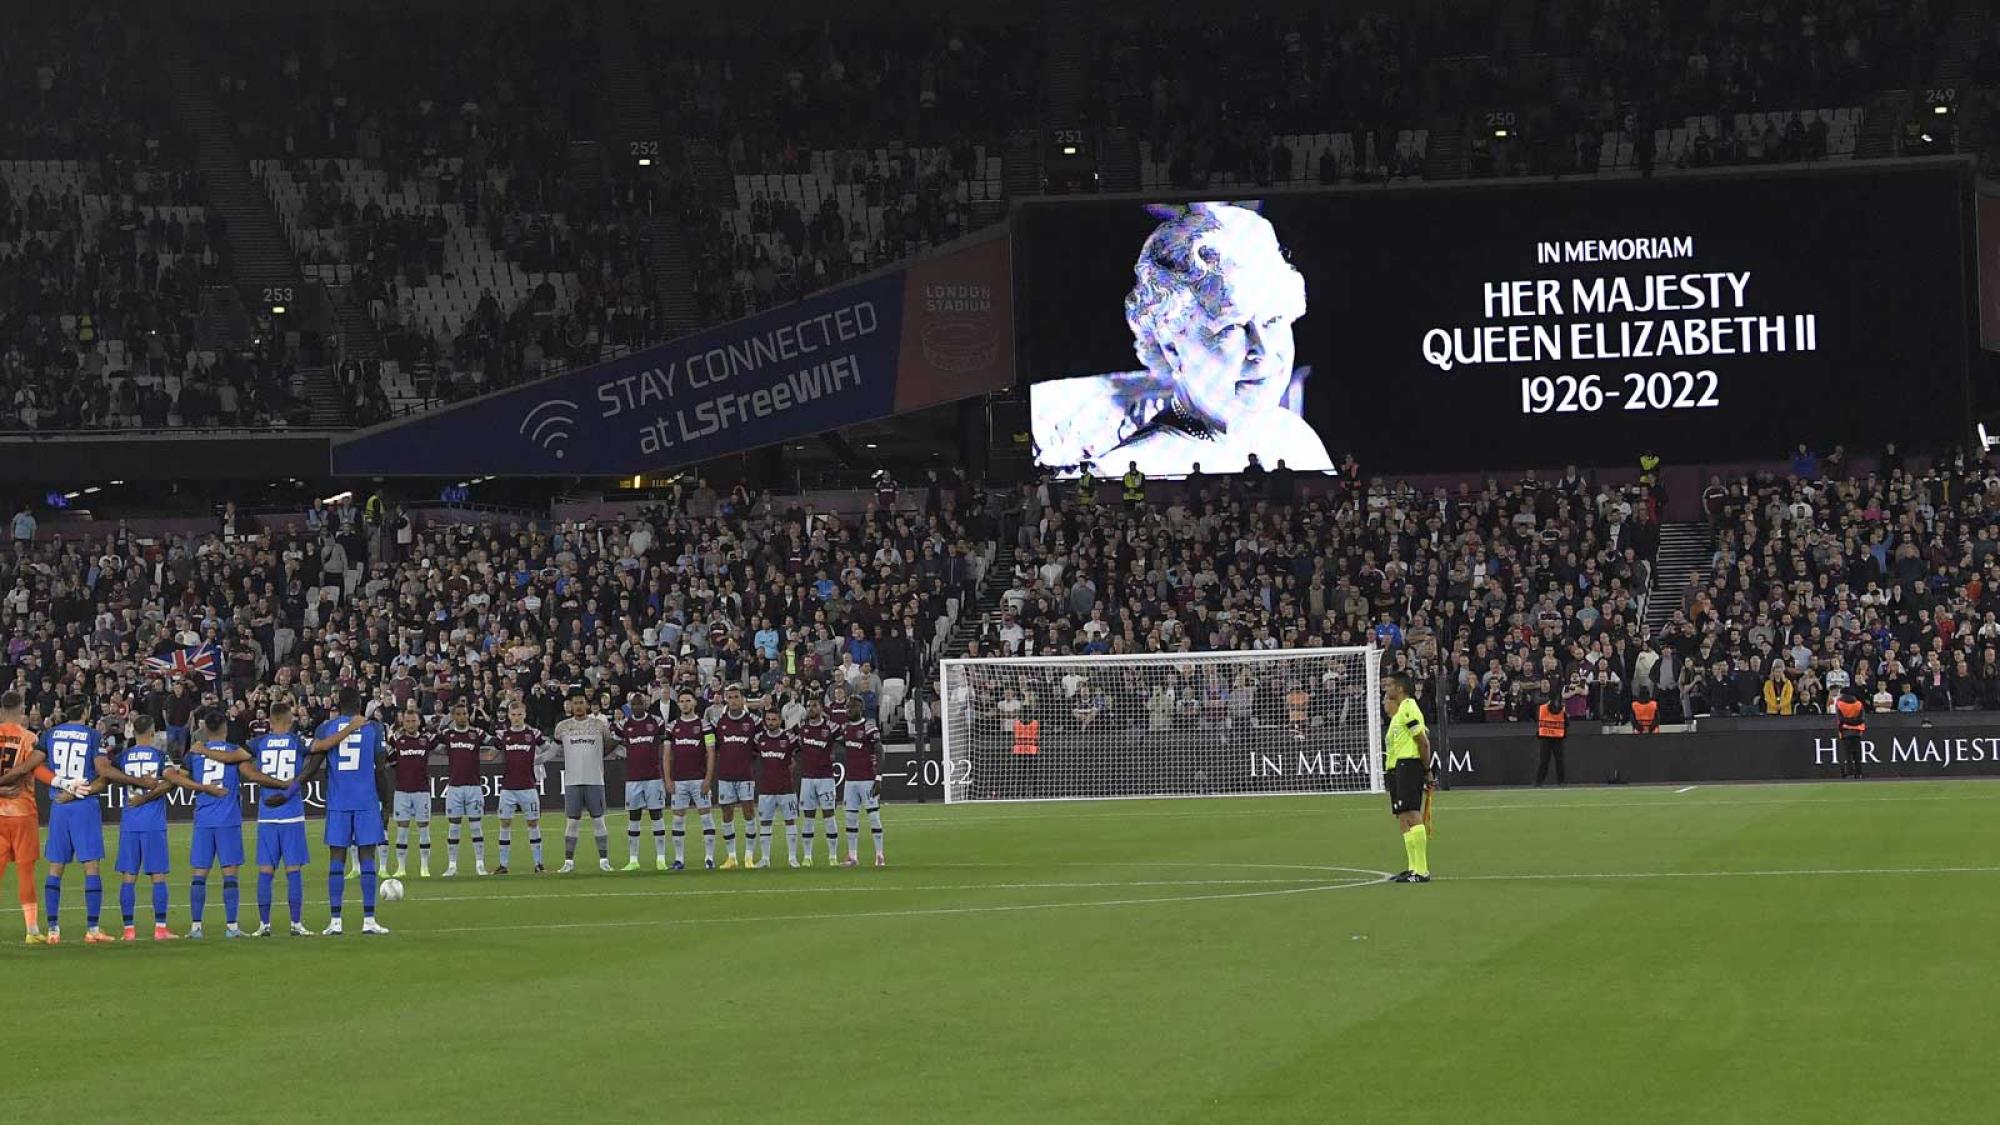 OFICIAL: Jogos da Premier League adiados depois da morte da Rainha